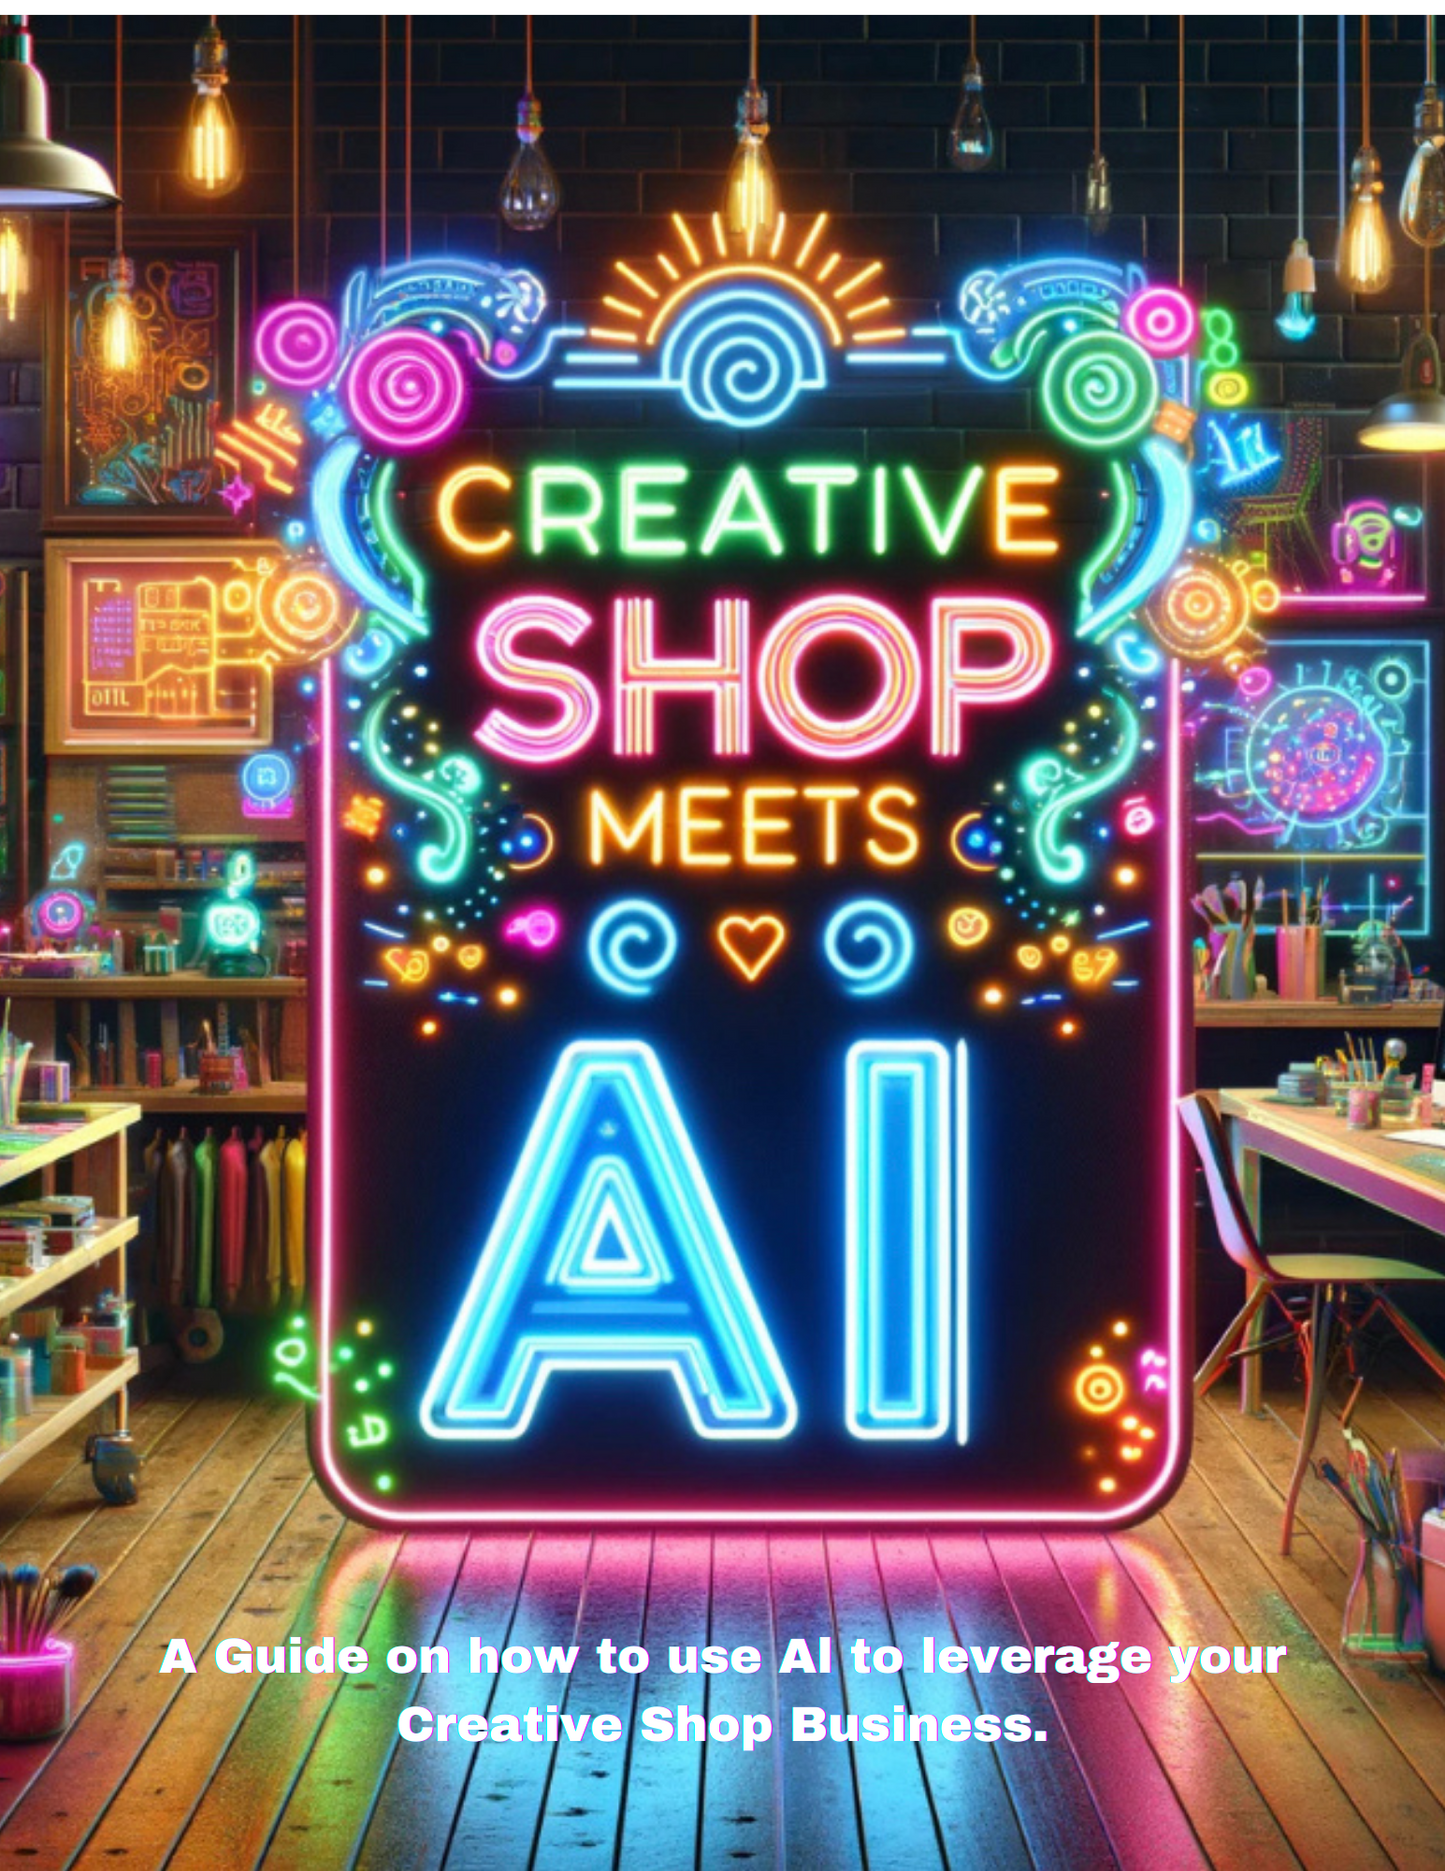 E- Book (Creative Shop Meets AI) with freebies